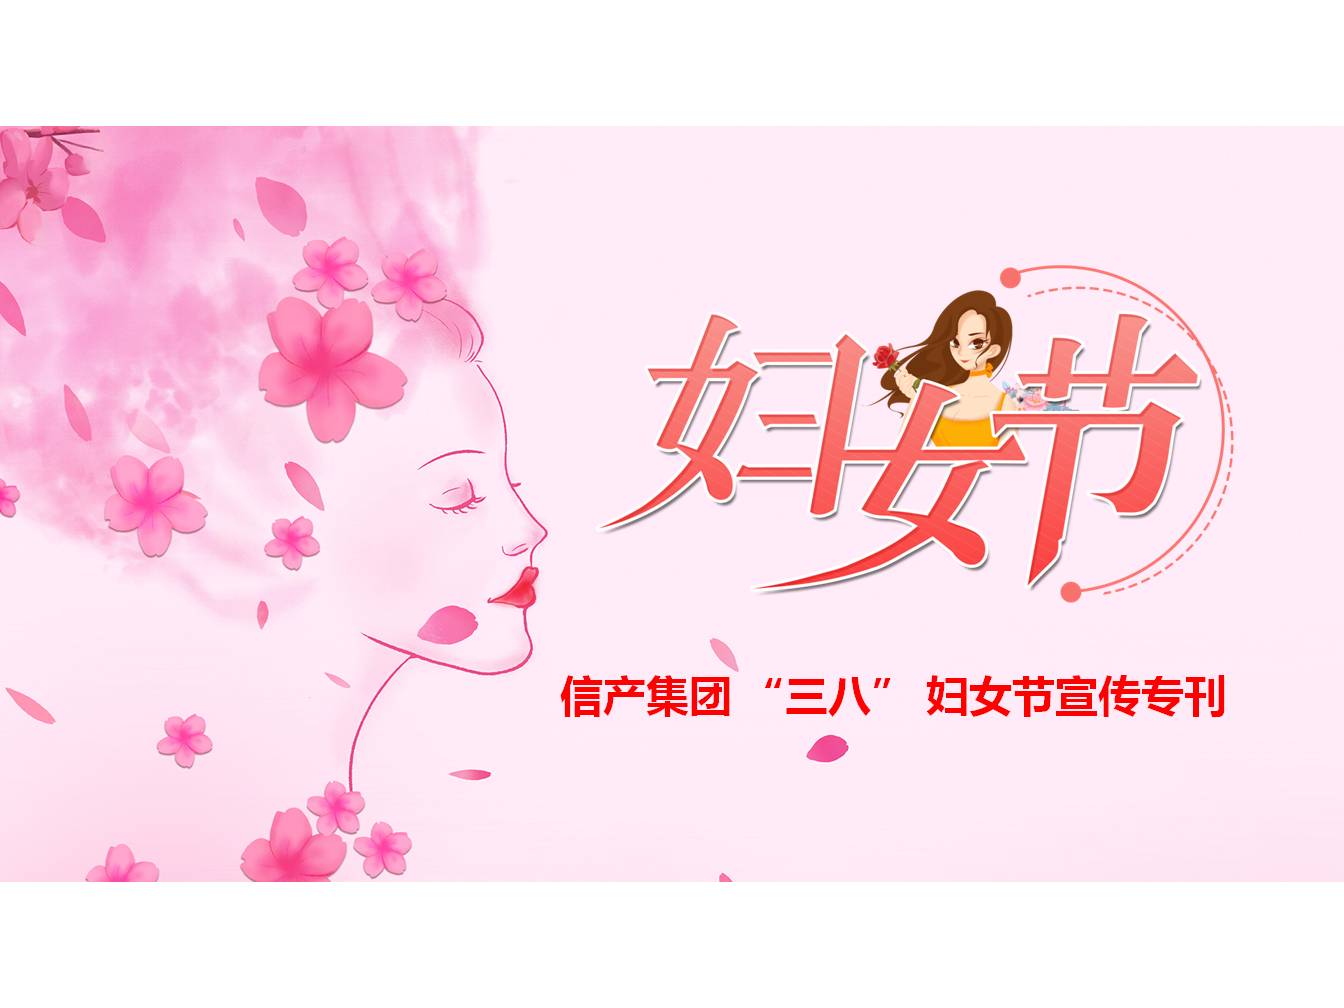 西班牙VS意大利（中国）有限公司 “三八” 妇女节宣传专刊